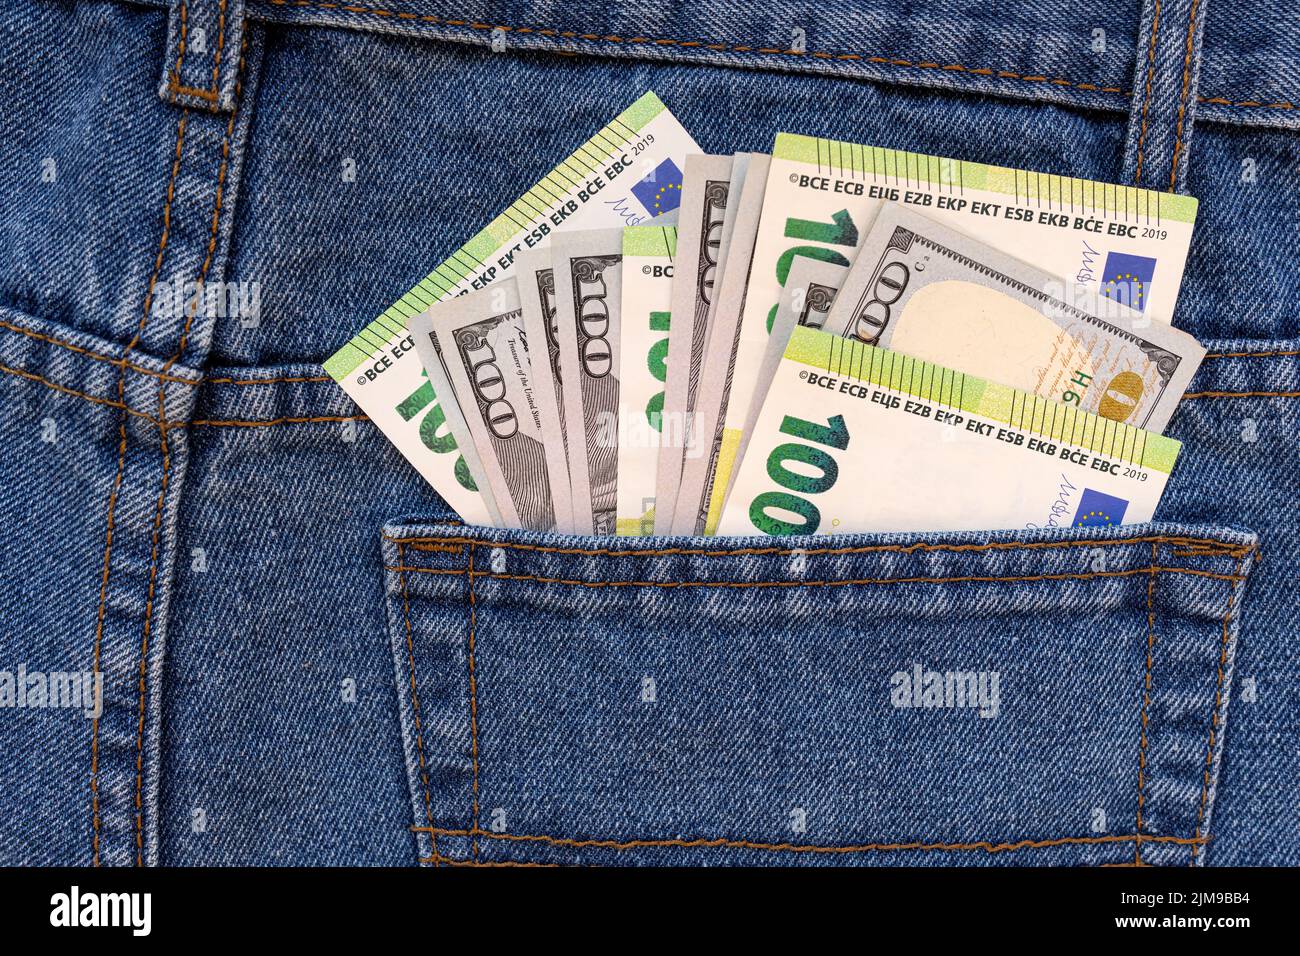 Un sac d'argent dans une poche à pantalon. Banque D'Images